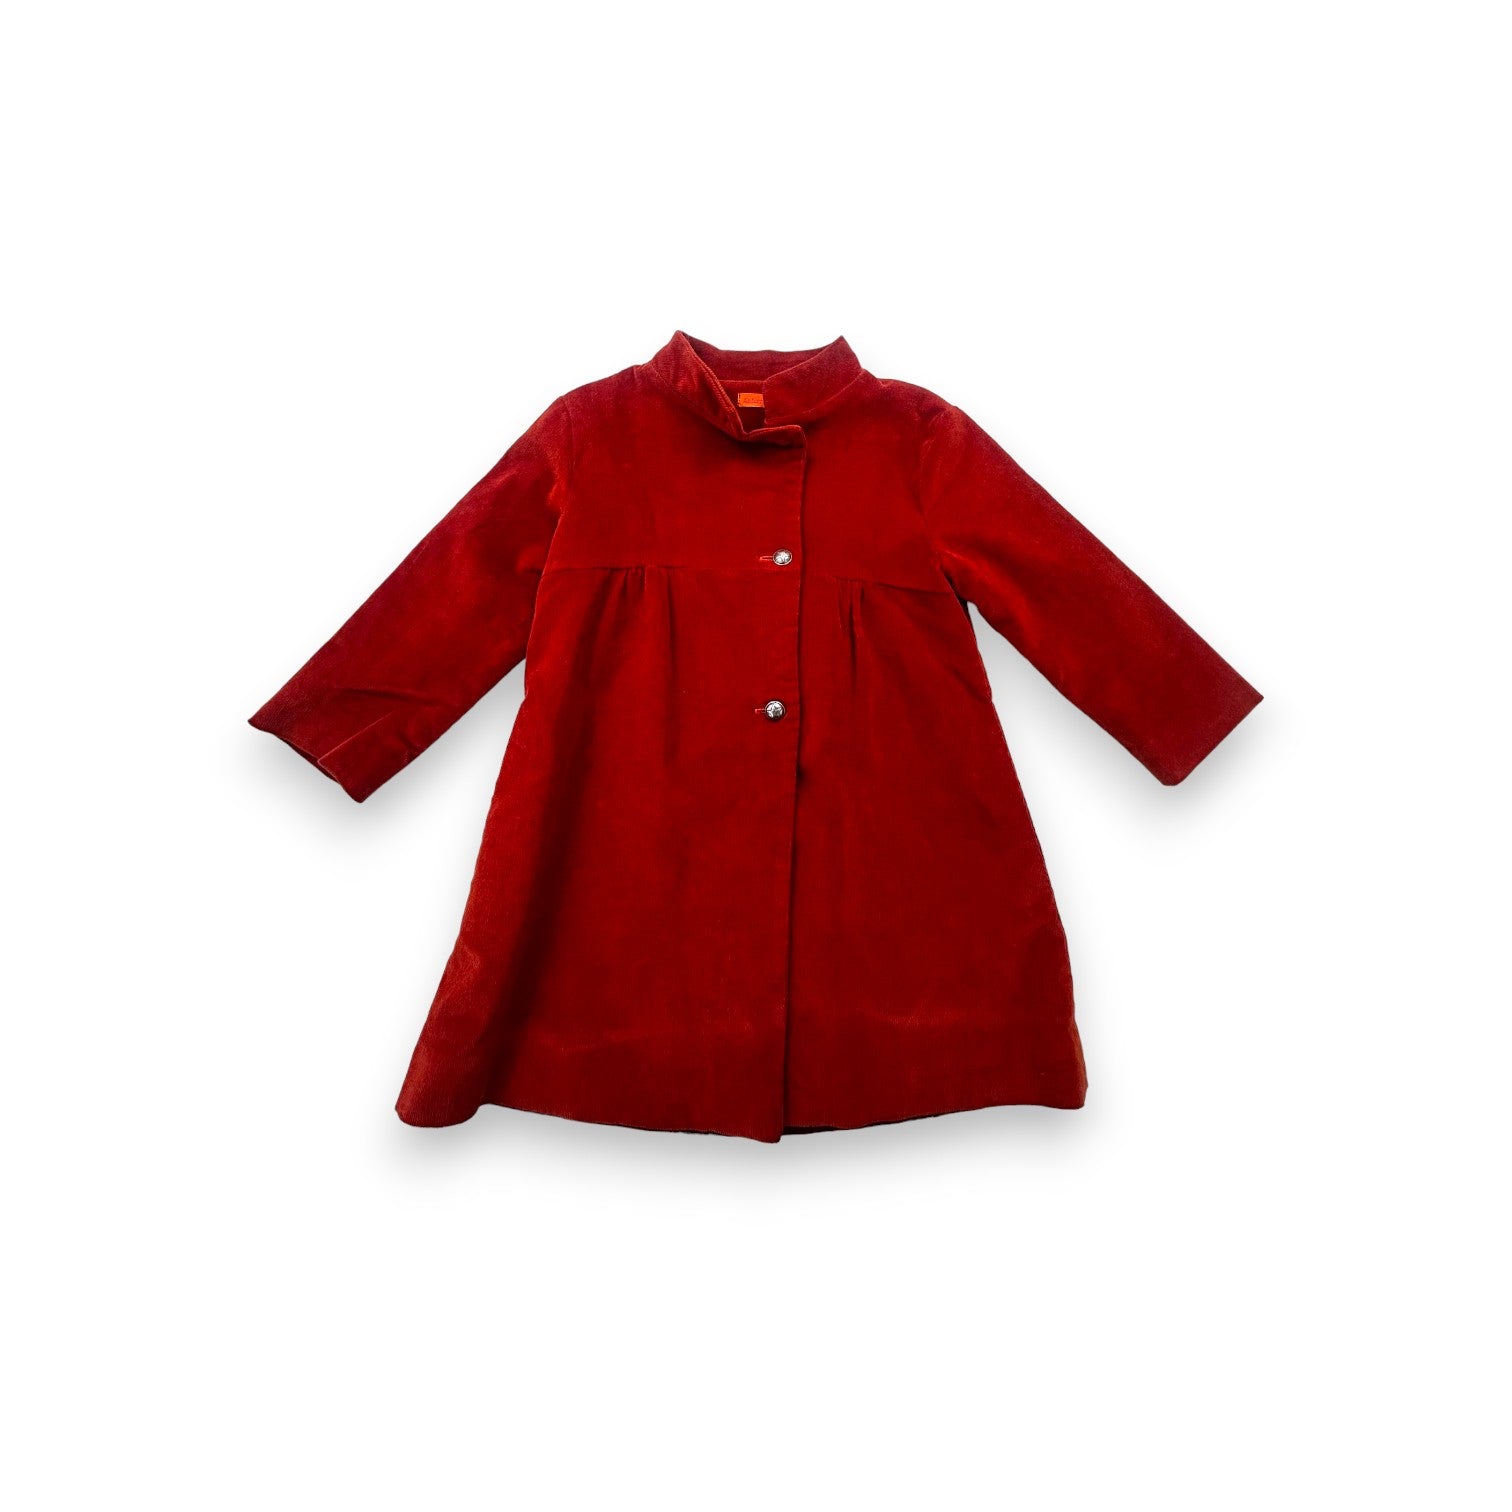 ANTOINE & LILI - Robe en velours rouge - 4 ans